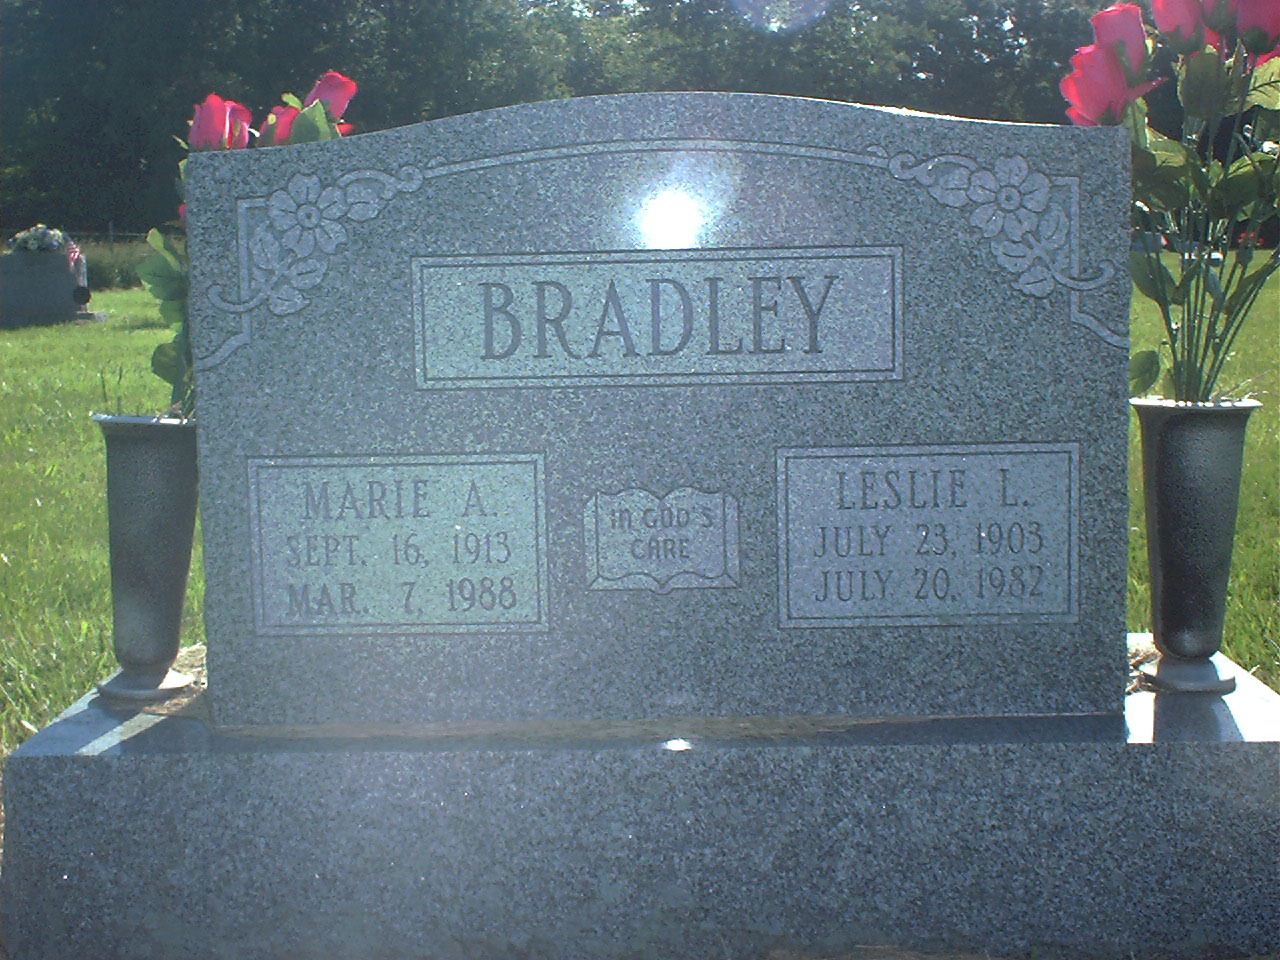 Leslie L. Bradley headstone